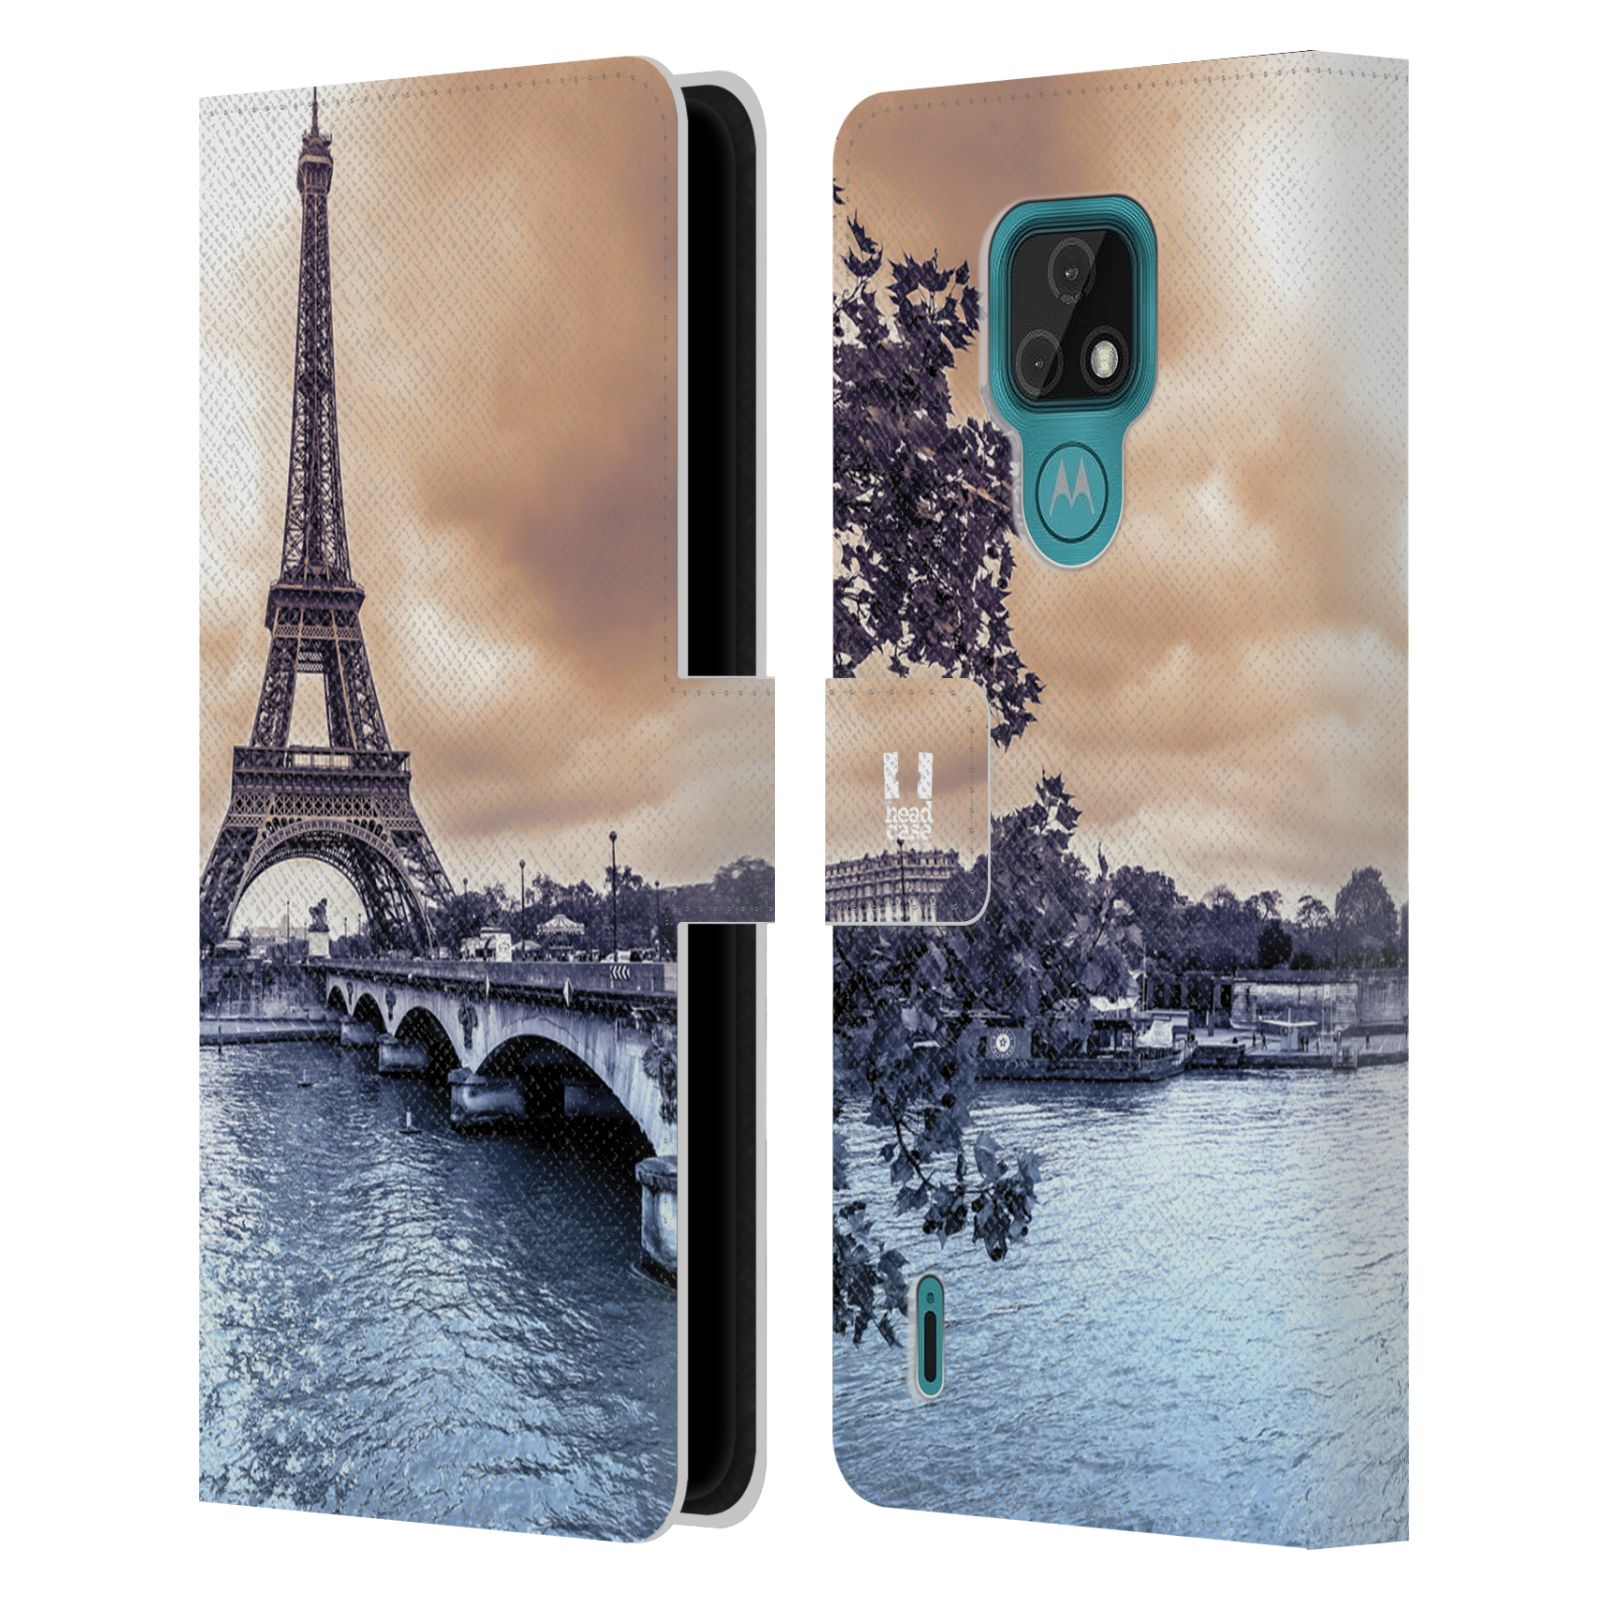 Pouzdro pro mobil Motorola Moto E7 - HEAD CASE - Eiffelova věž Paříž - Francie